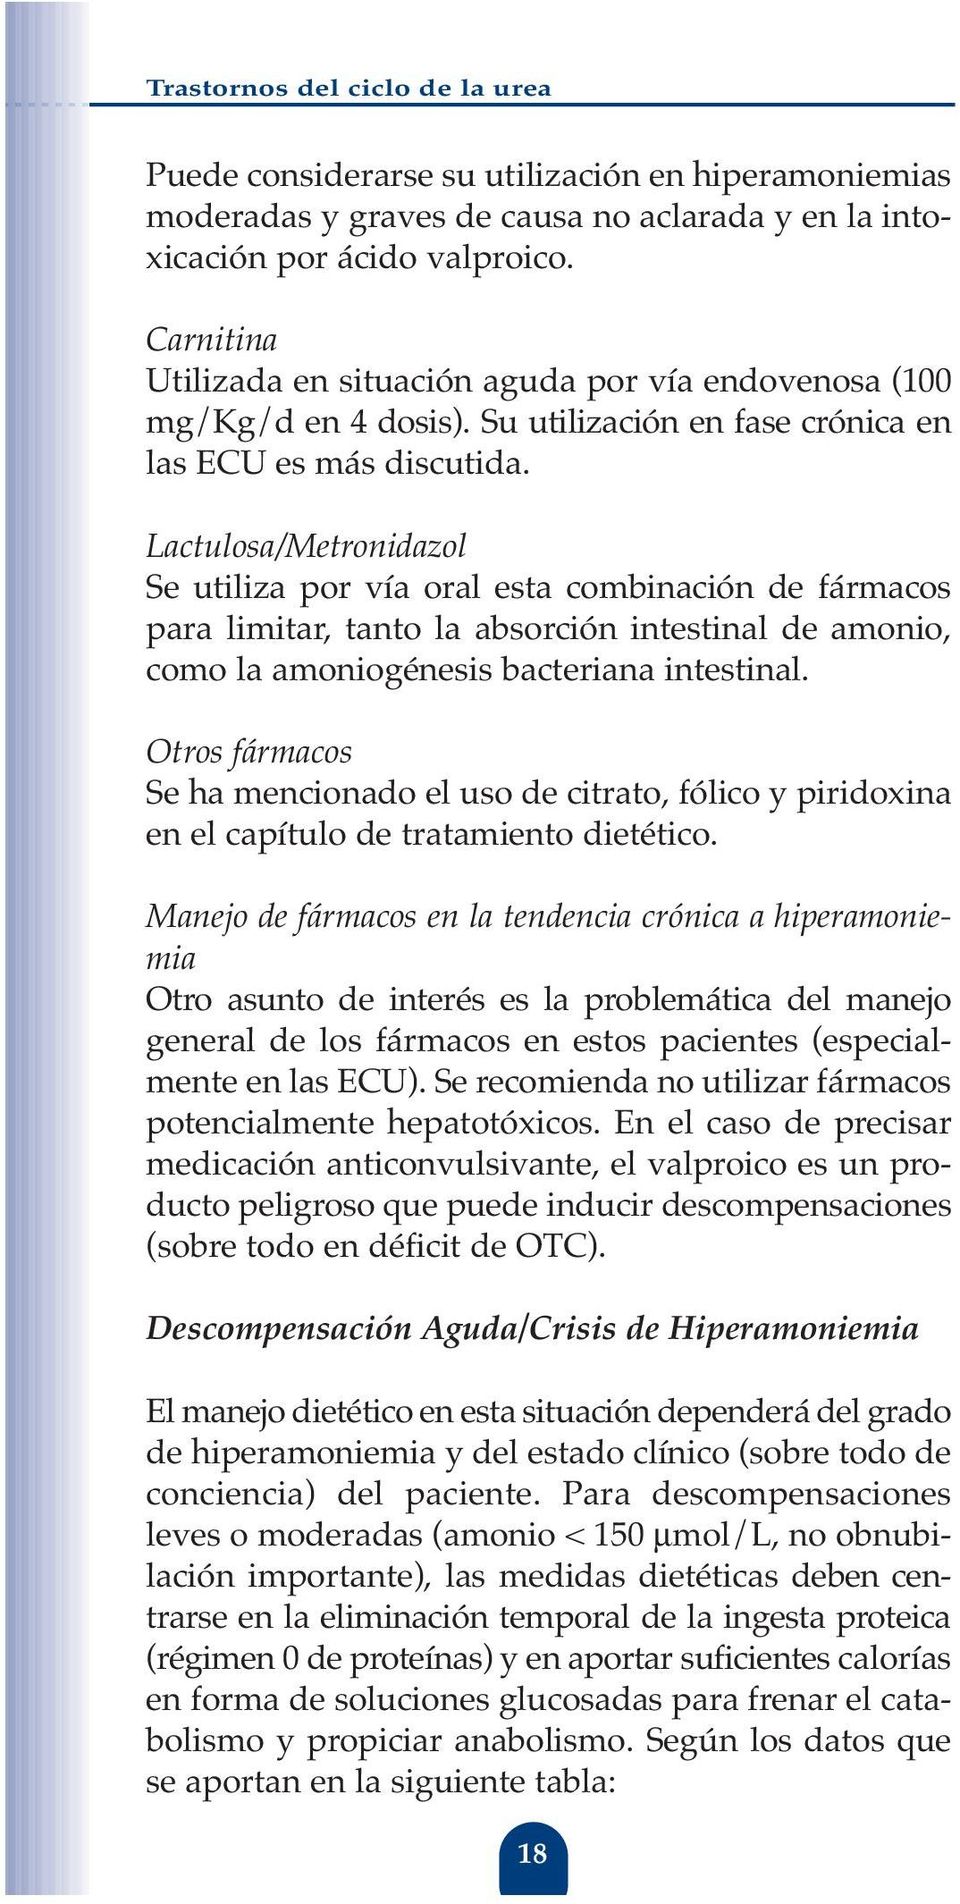 Lactulosa/Metronidazol Se utiliza por vía oral esta combinación de fármacos para limitar, tanto la absorción intestinal de amonio, como la amoniogénesis bacteriana intestinal.